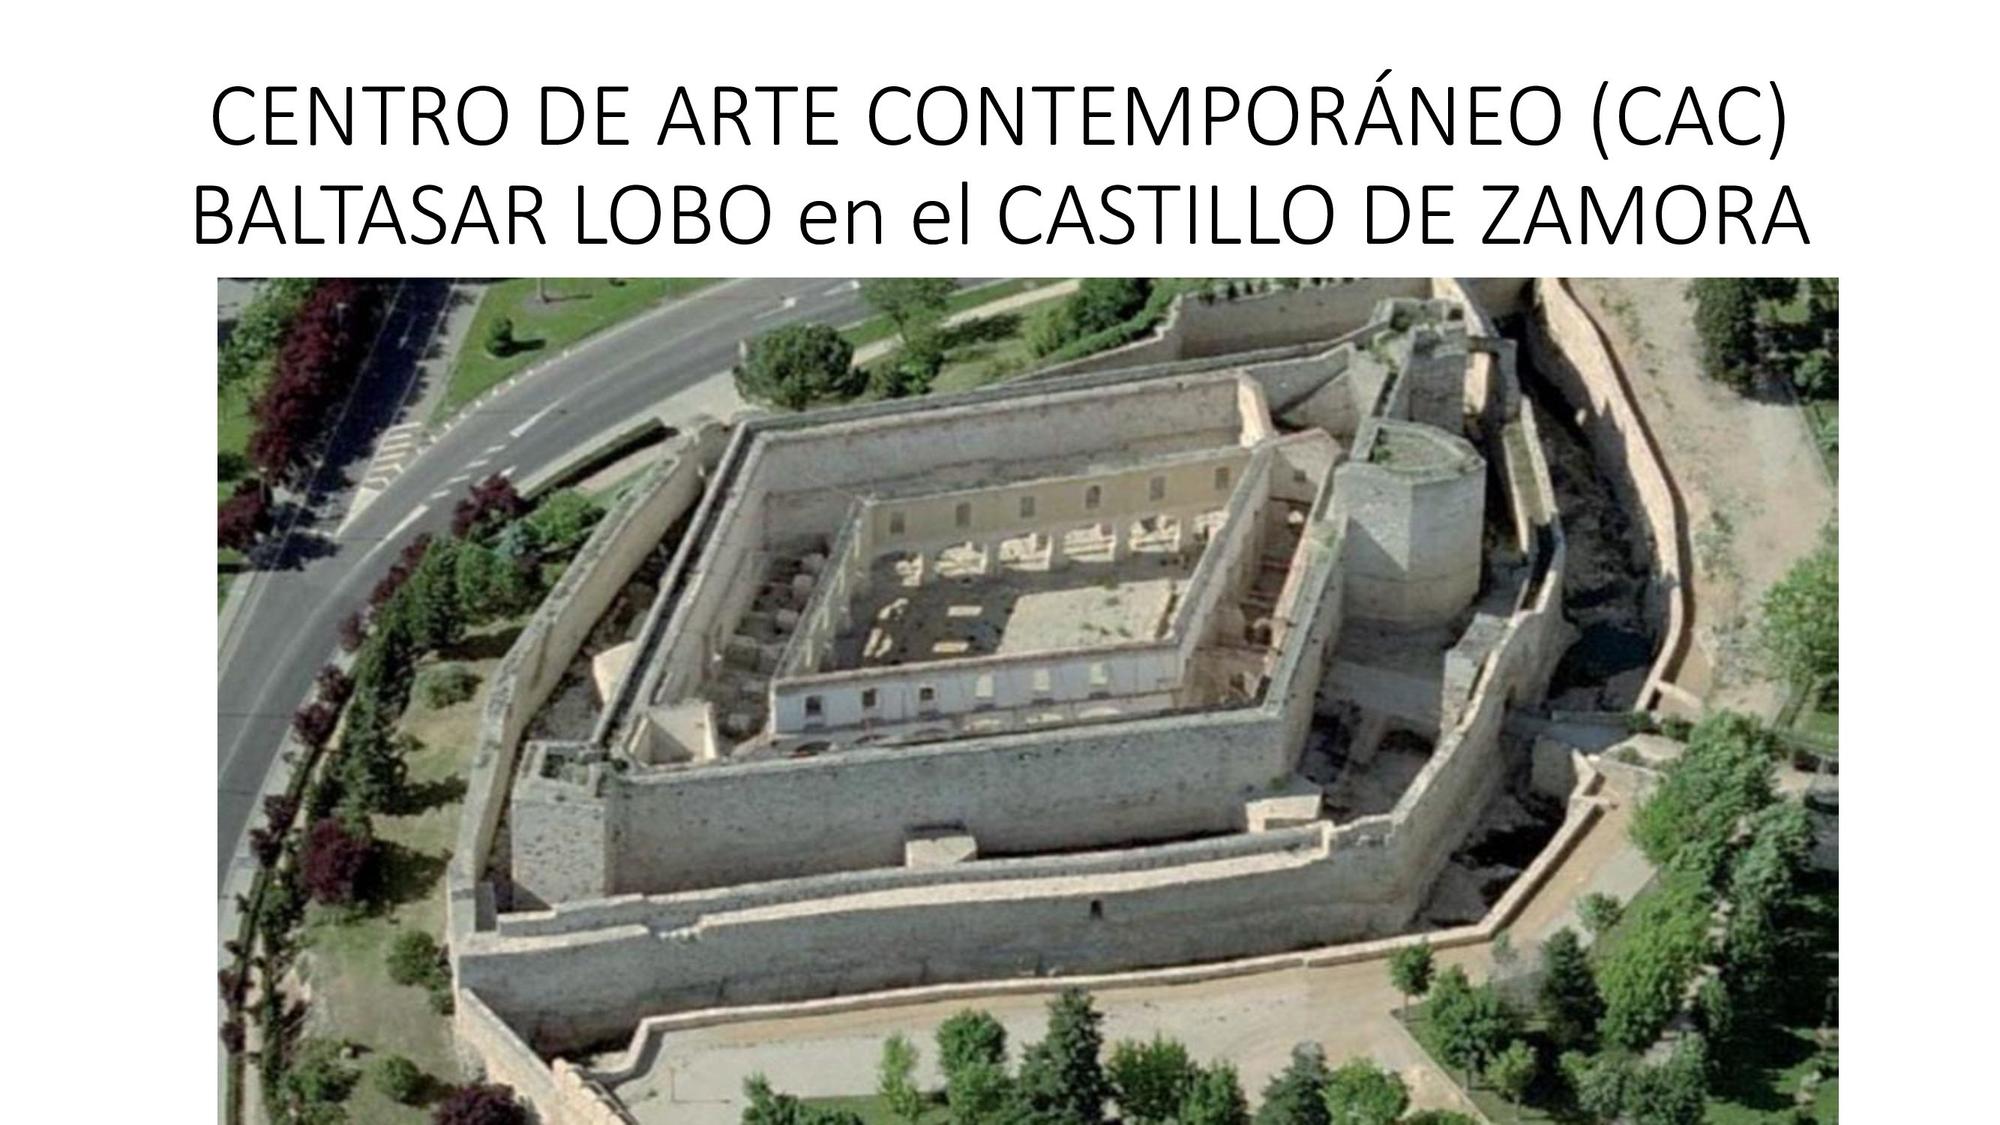 Centro de Arte Contemporáneo Baltasar Lobo, de Pedro Lucas del Teso